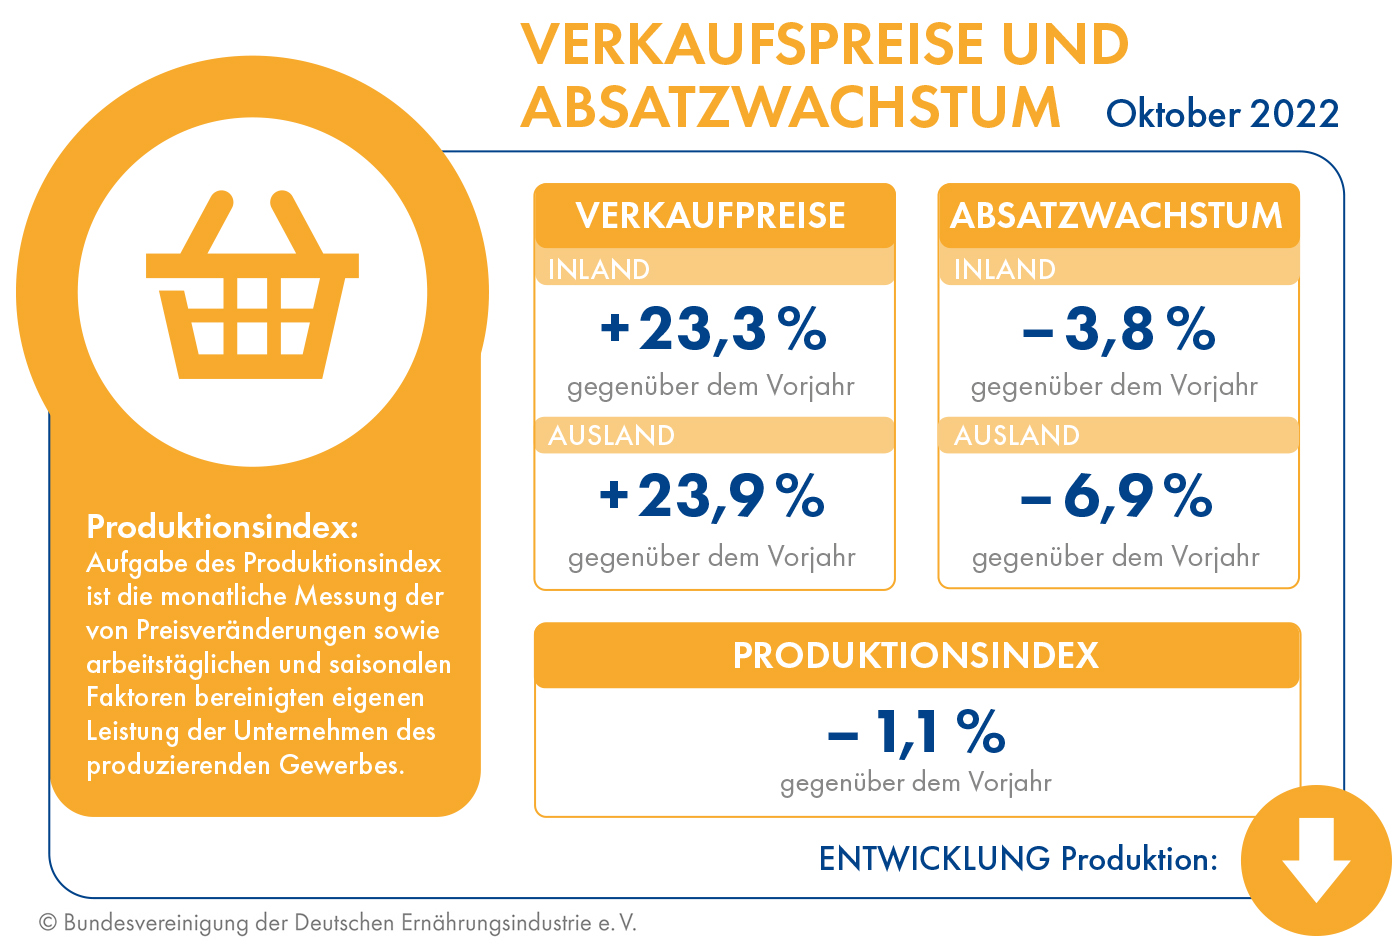 Verkaufspreise und Absatzmarkt im Fokus - Quelle: Bundesvereinigung der Deutschen Ernhrungsindustrie e.V.